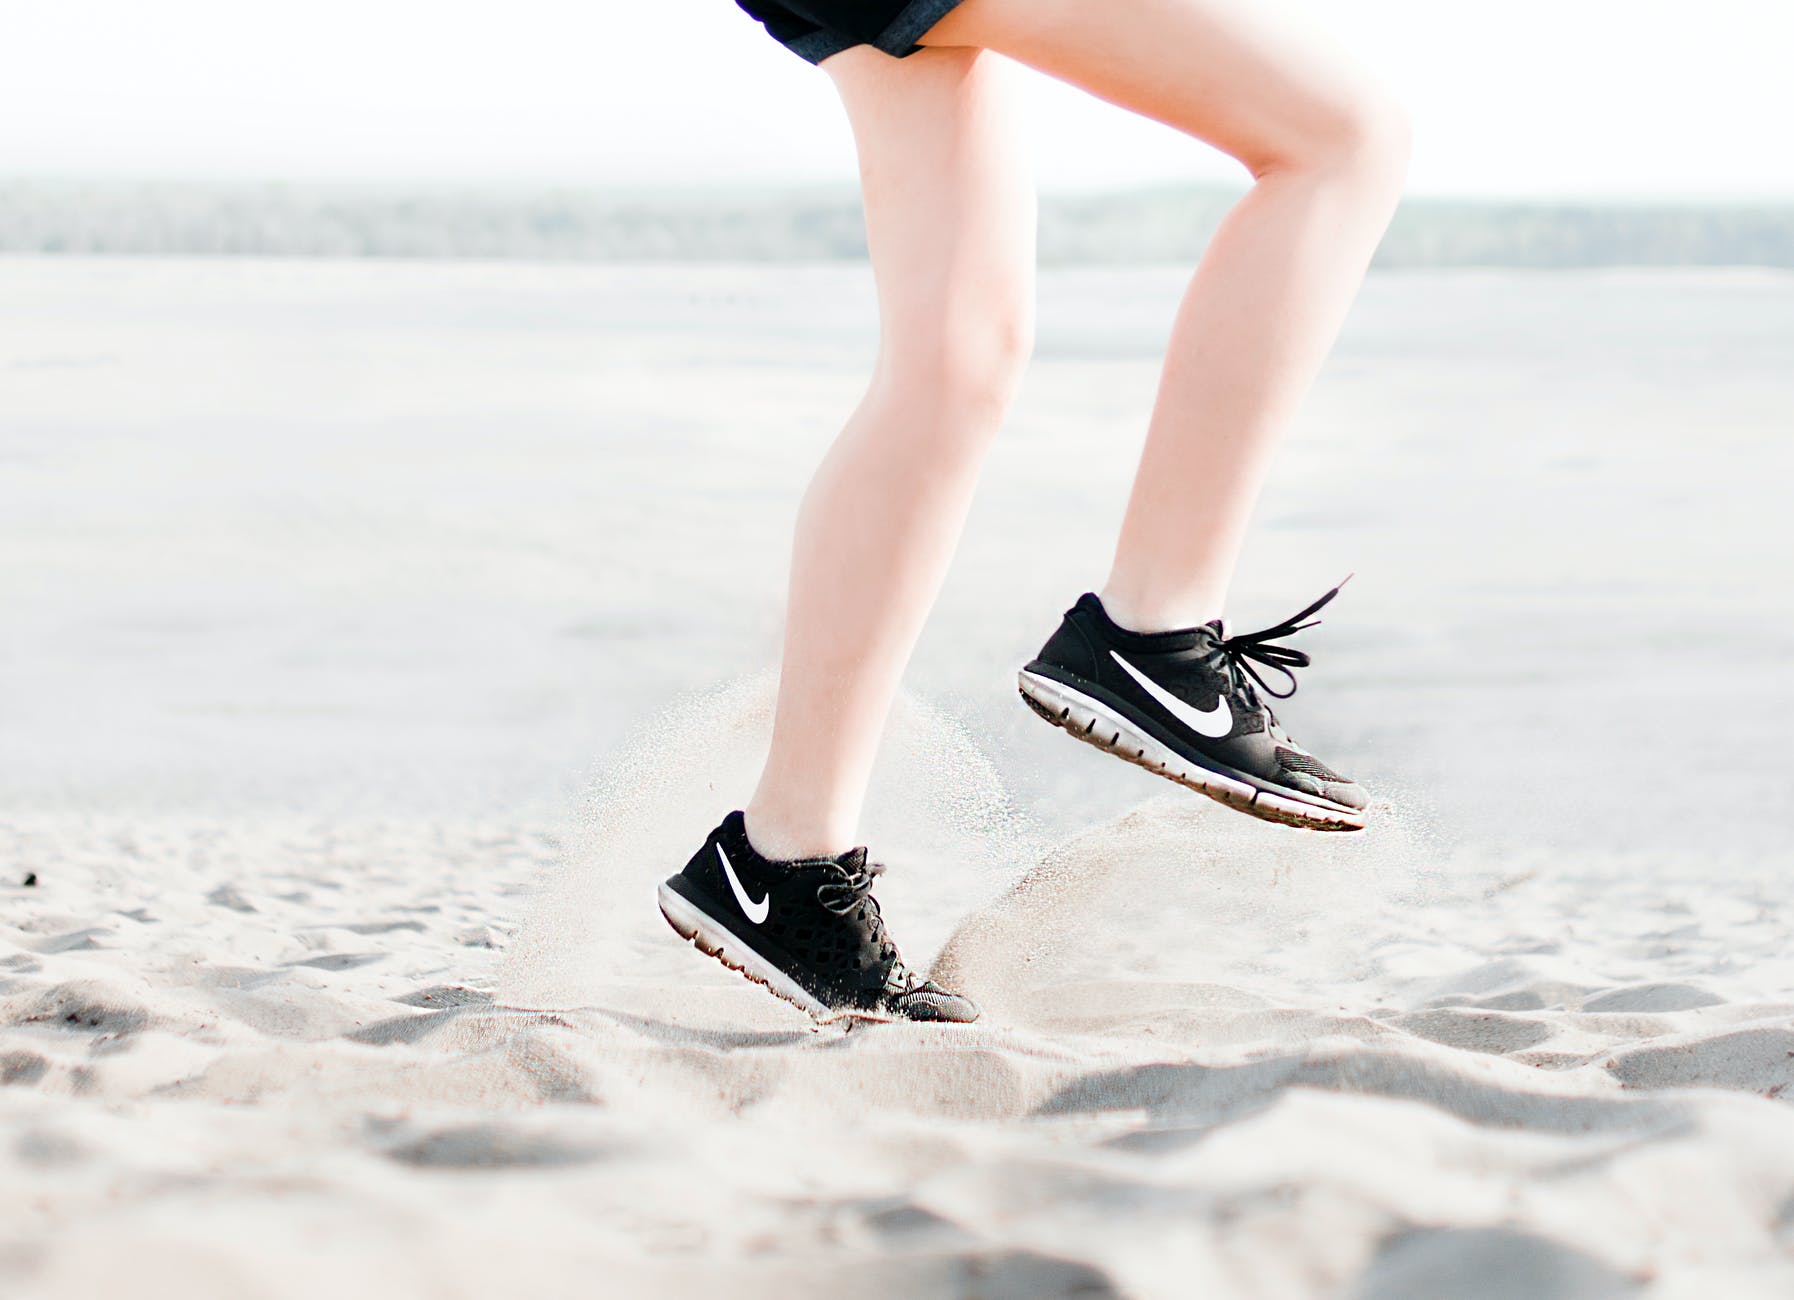 Τρέξιμο στην άμμο - Όλα όσα πρέπει να προσέχετε